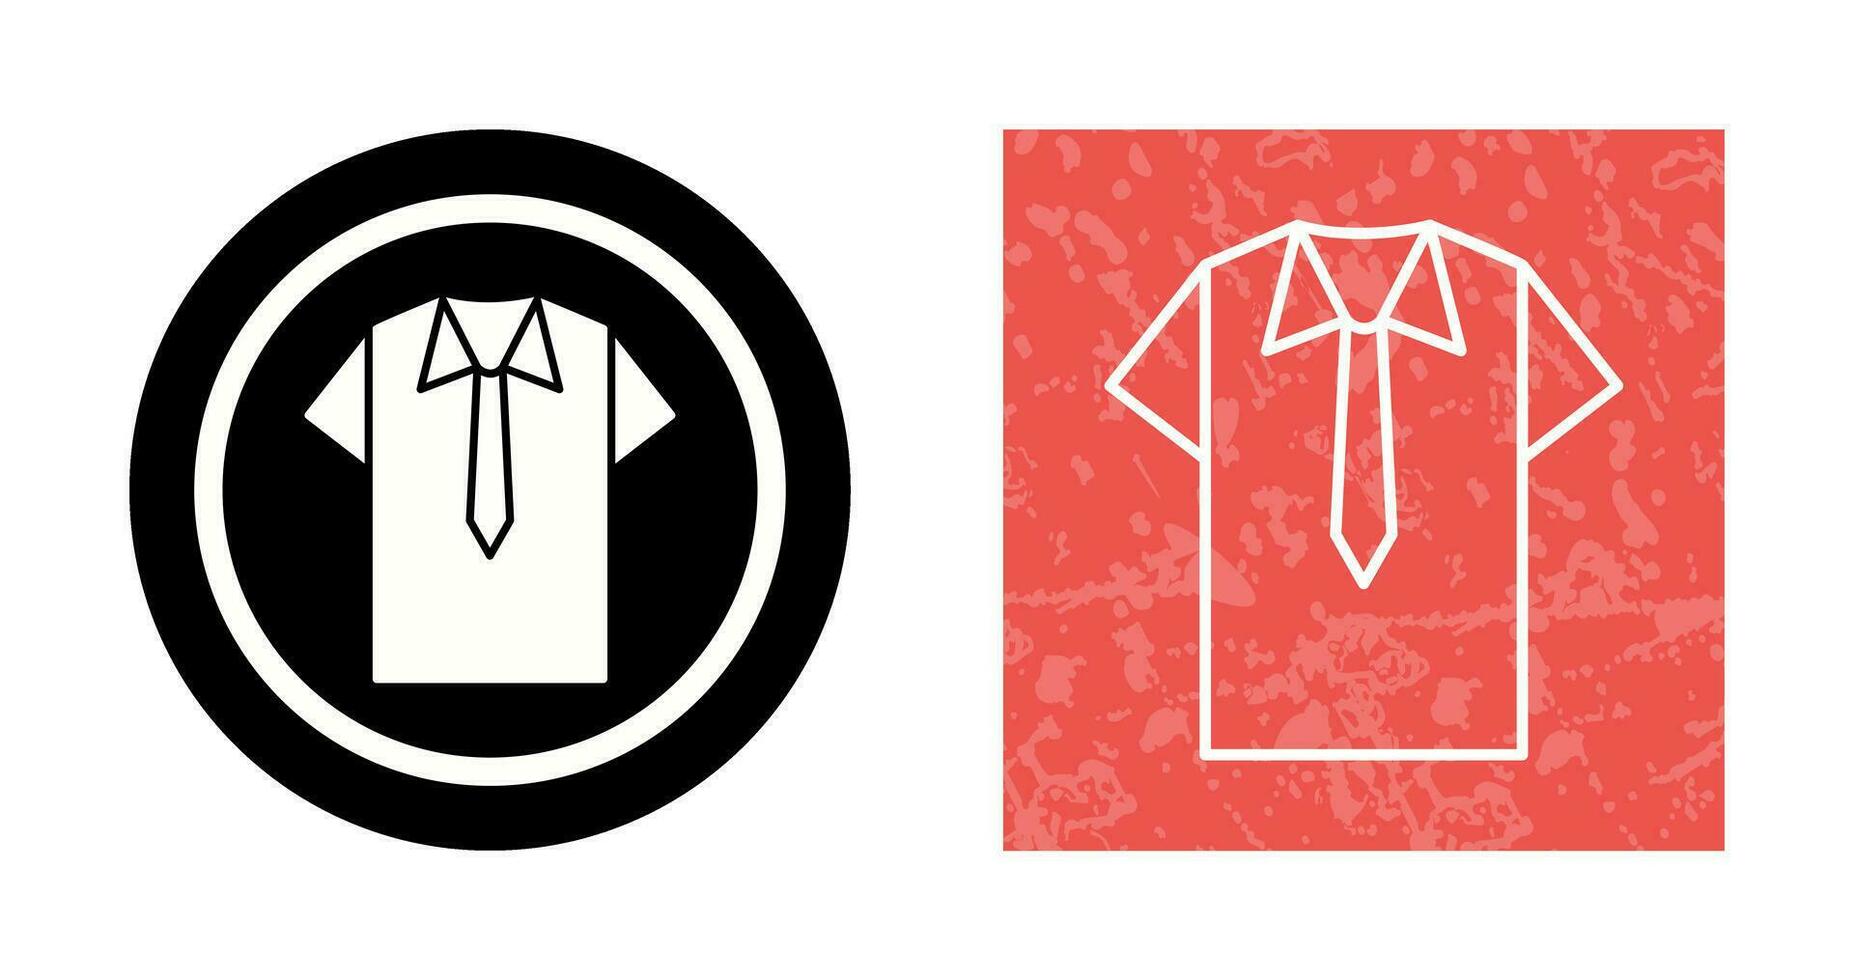 icône de vecteur chemise et cravate